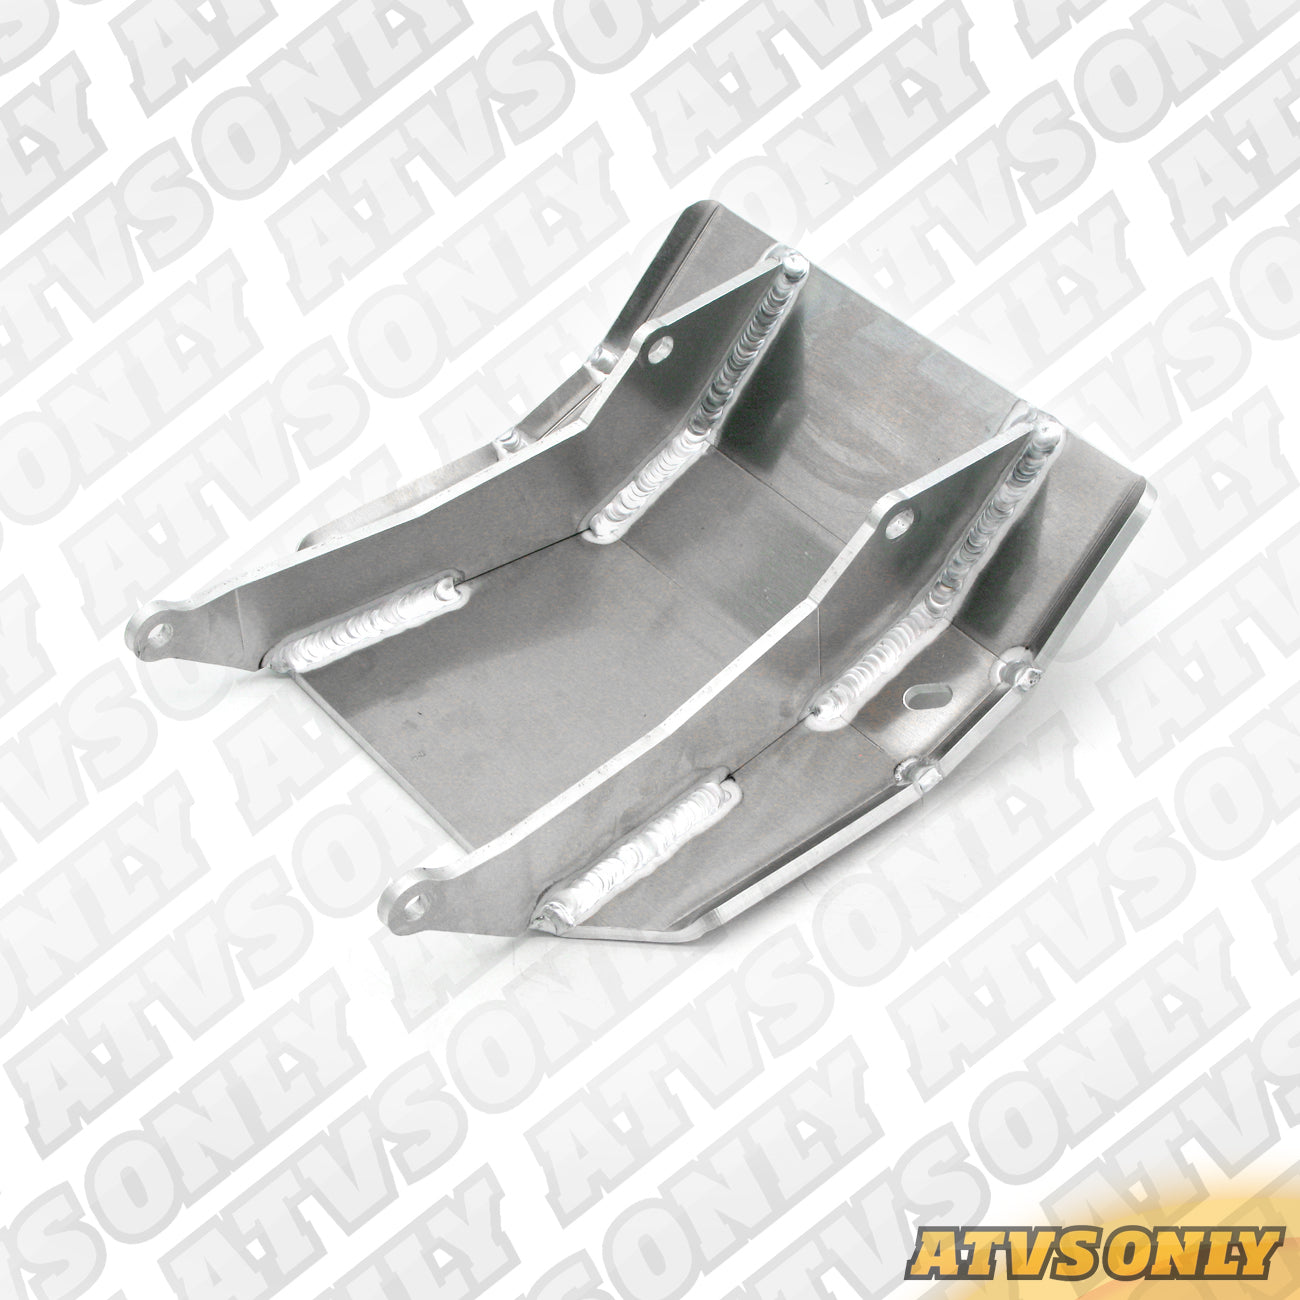 Rear Skid Plate (Aluminium) for Yamaha/Suzuki/Kawasaki/Honda Applications